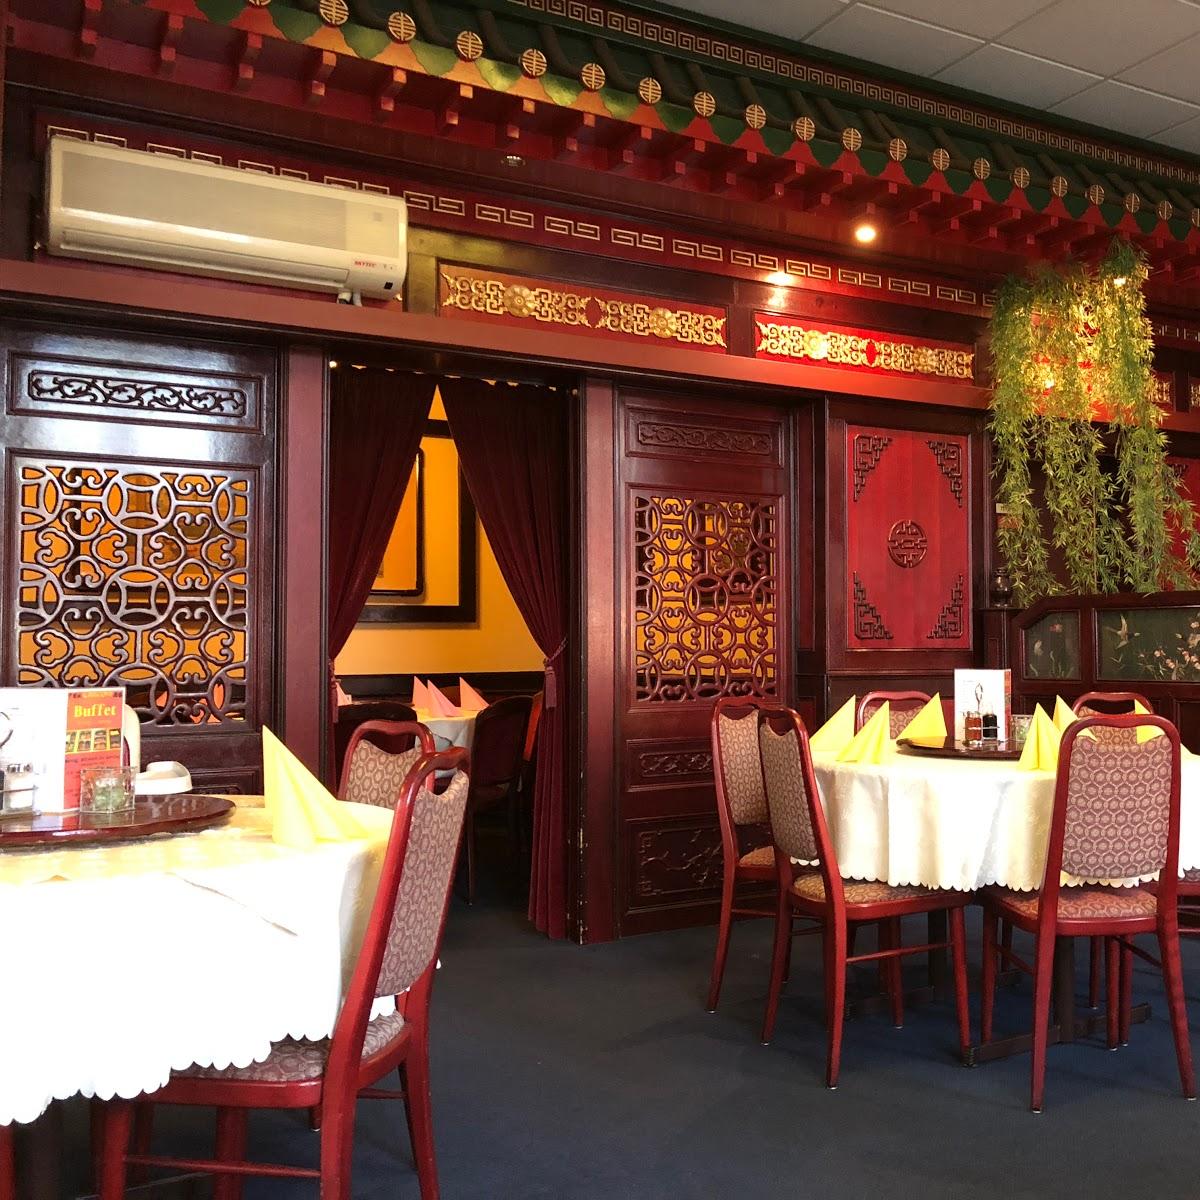 Restaurant "Chinatown" in Bayreuth